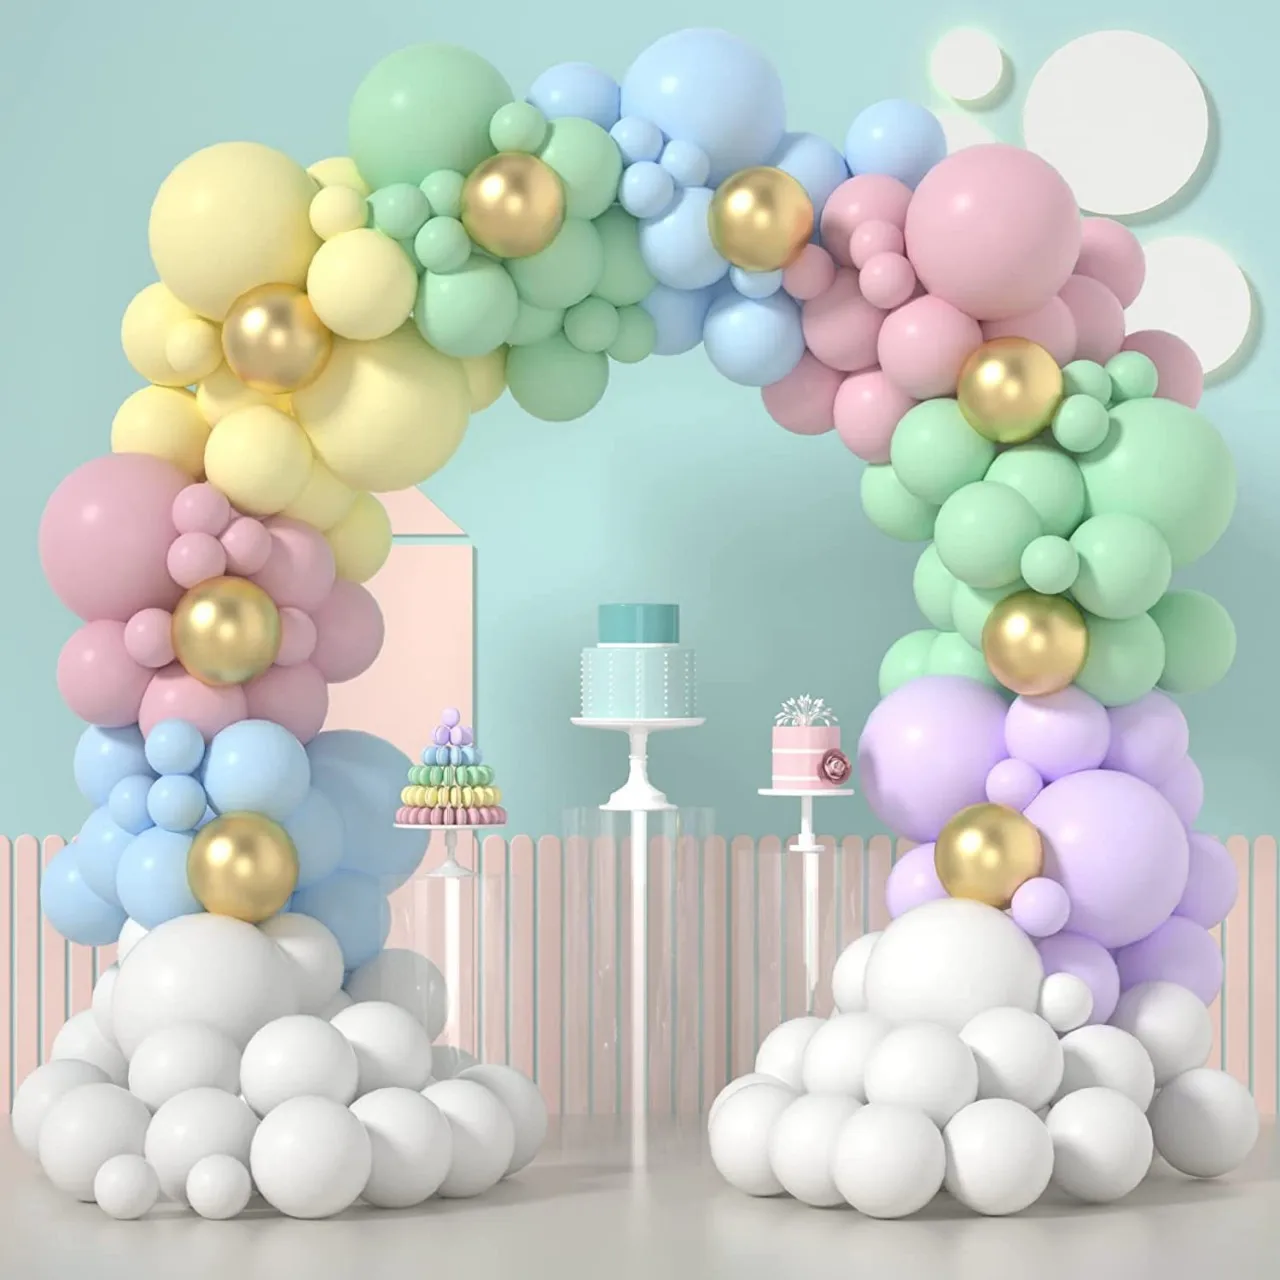 

Набор цветных воздушных шаров, розовая гирлянда, цепочка для шаров, арка, украшение для свадьбы, дня рождения, праздника для будущей мамы